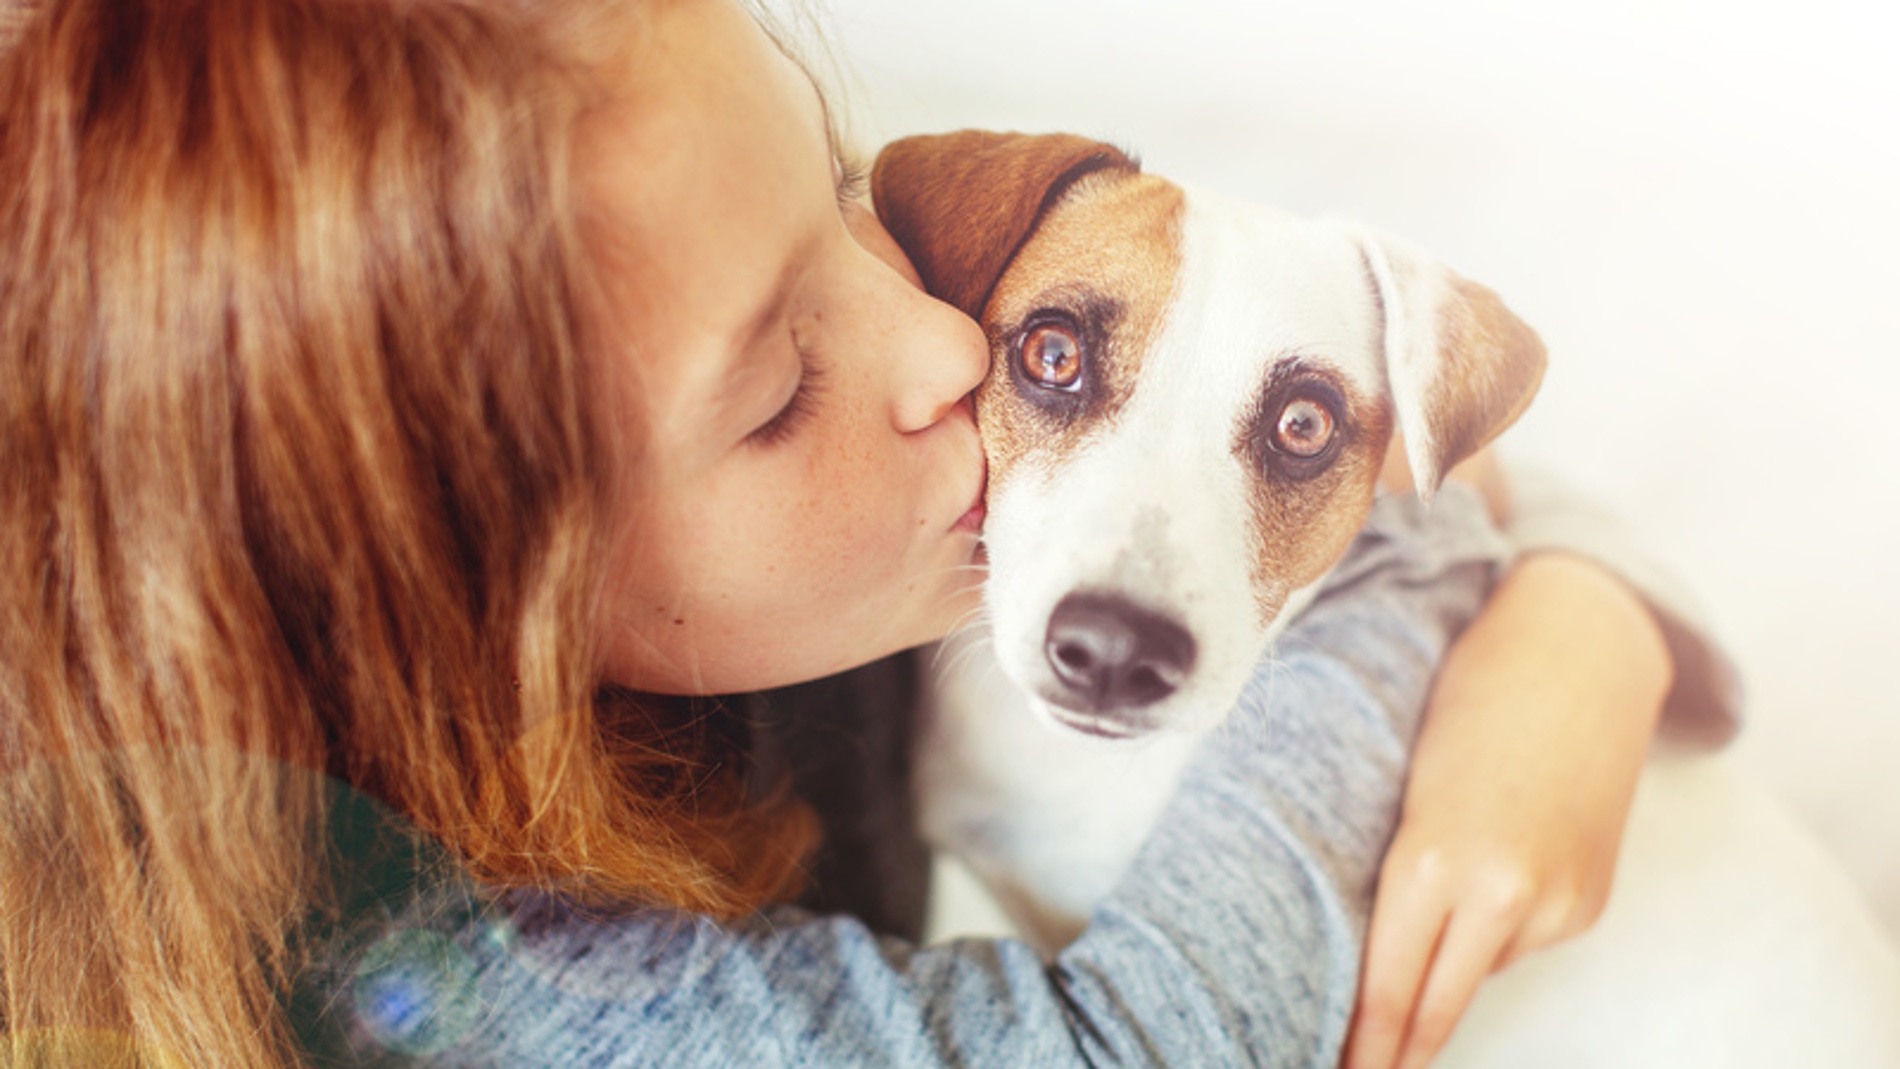 Los perros usan expresiones faciales para comunicarse con los humanos